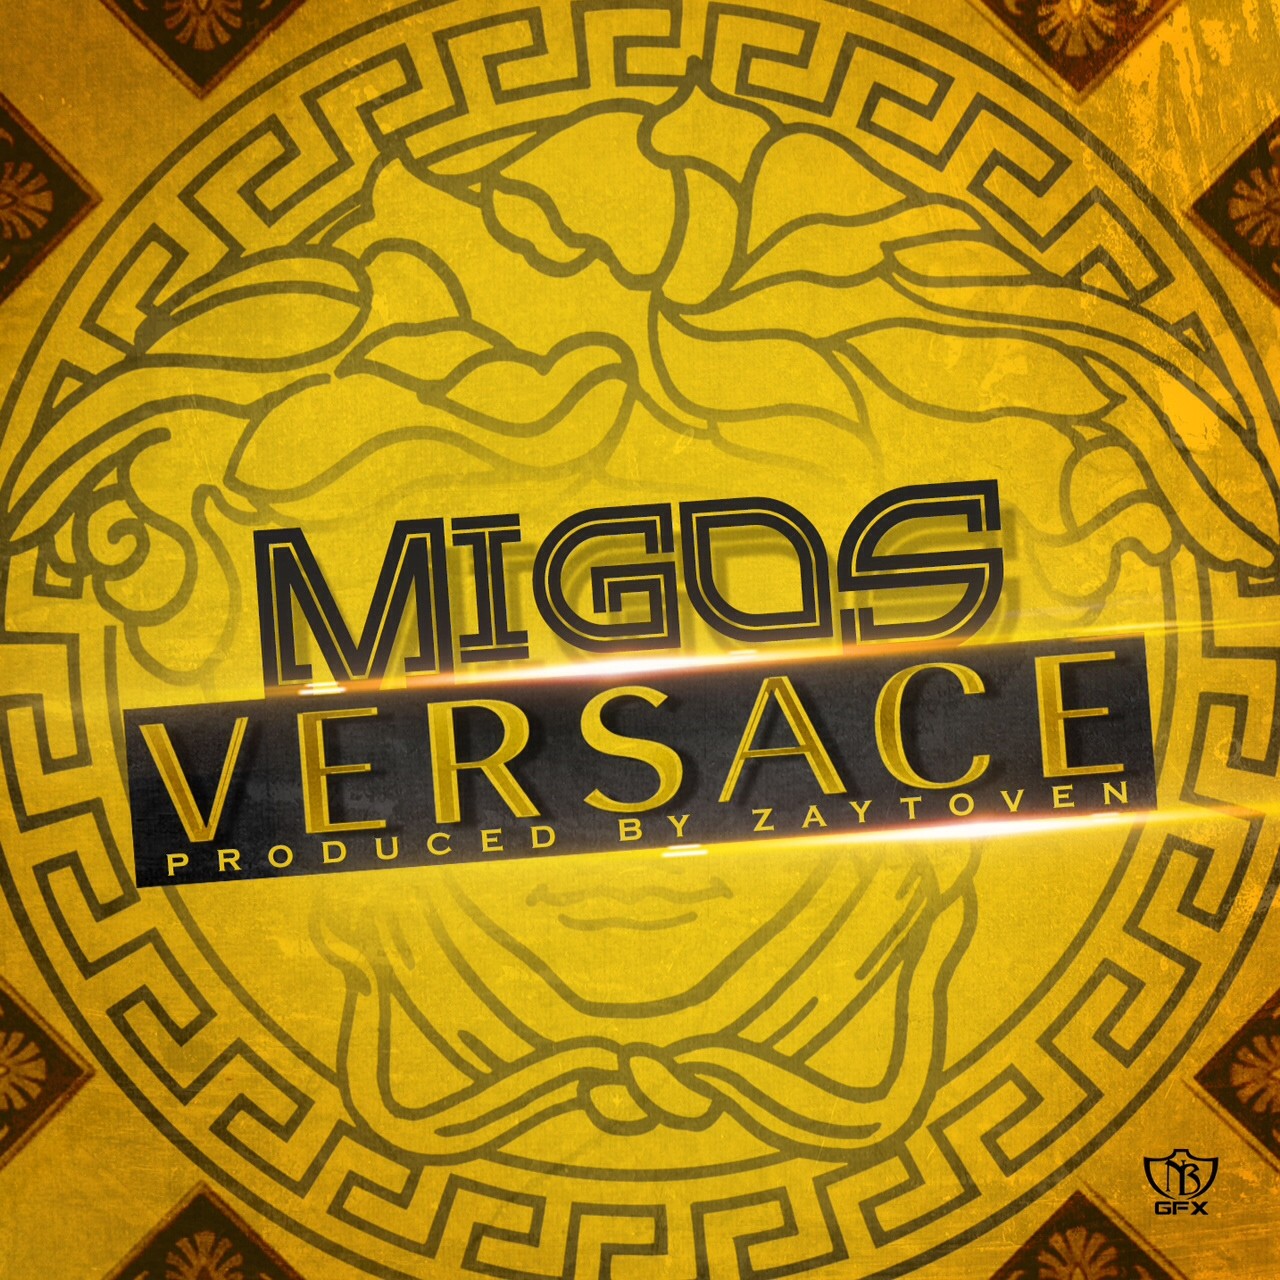 21. Migos, "Versace" (17 Votes)